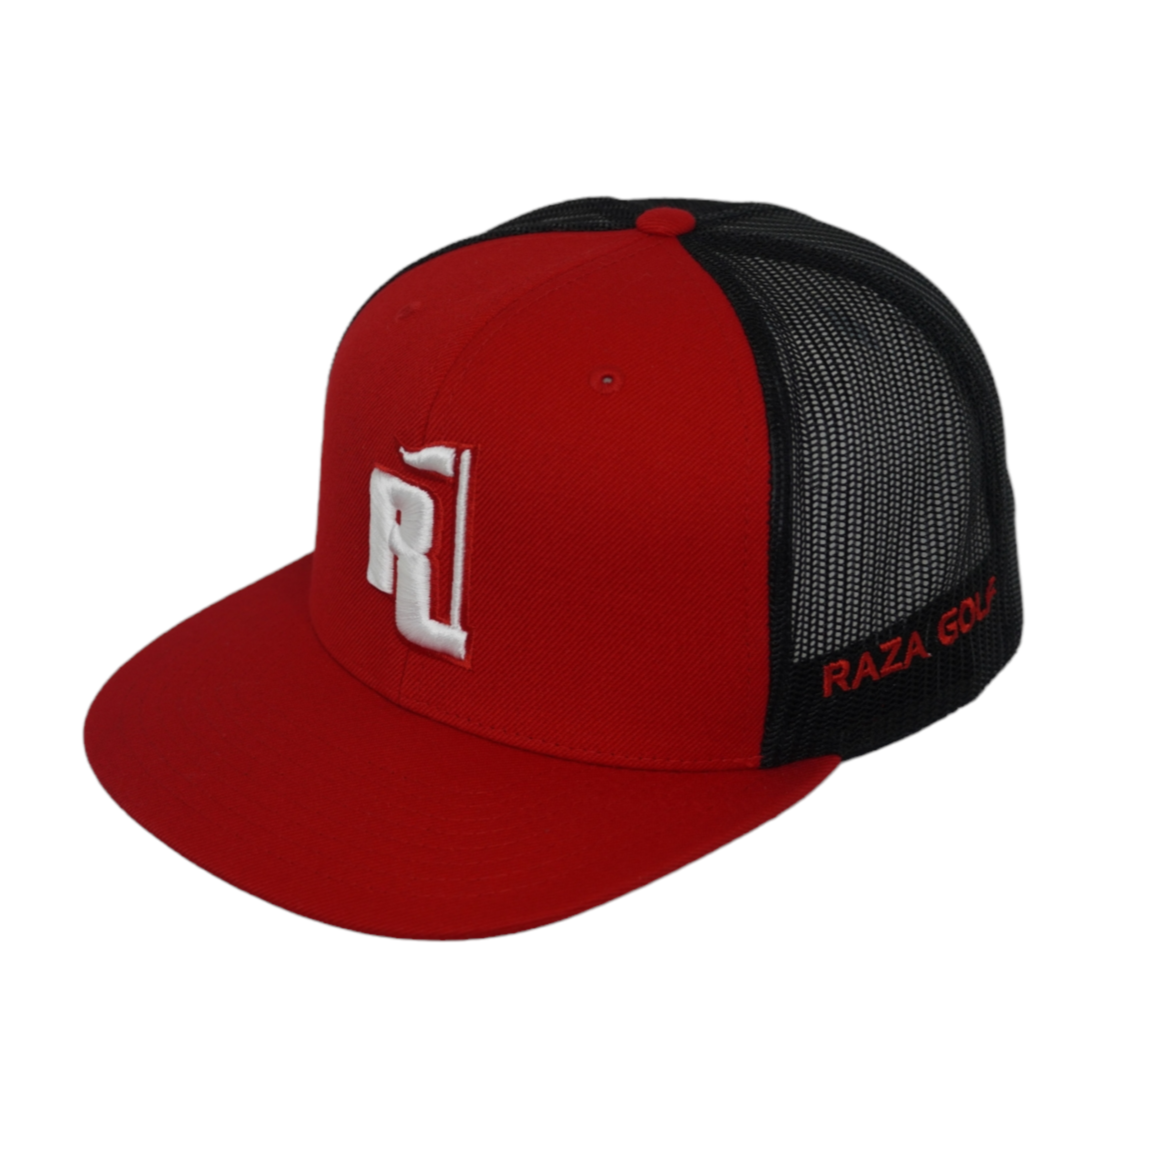 Raza Golf Red Trucker Hat